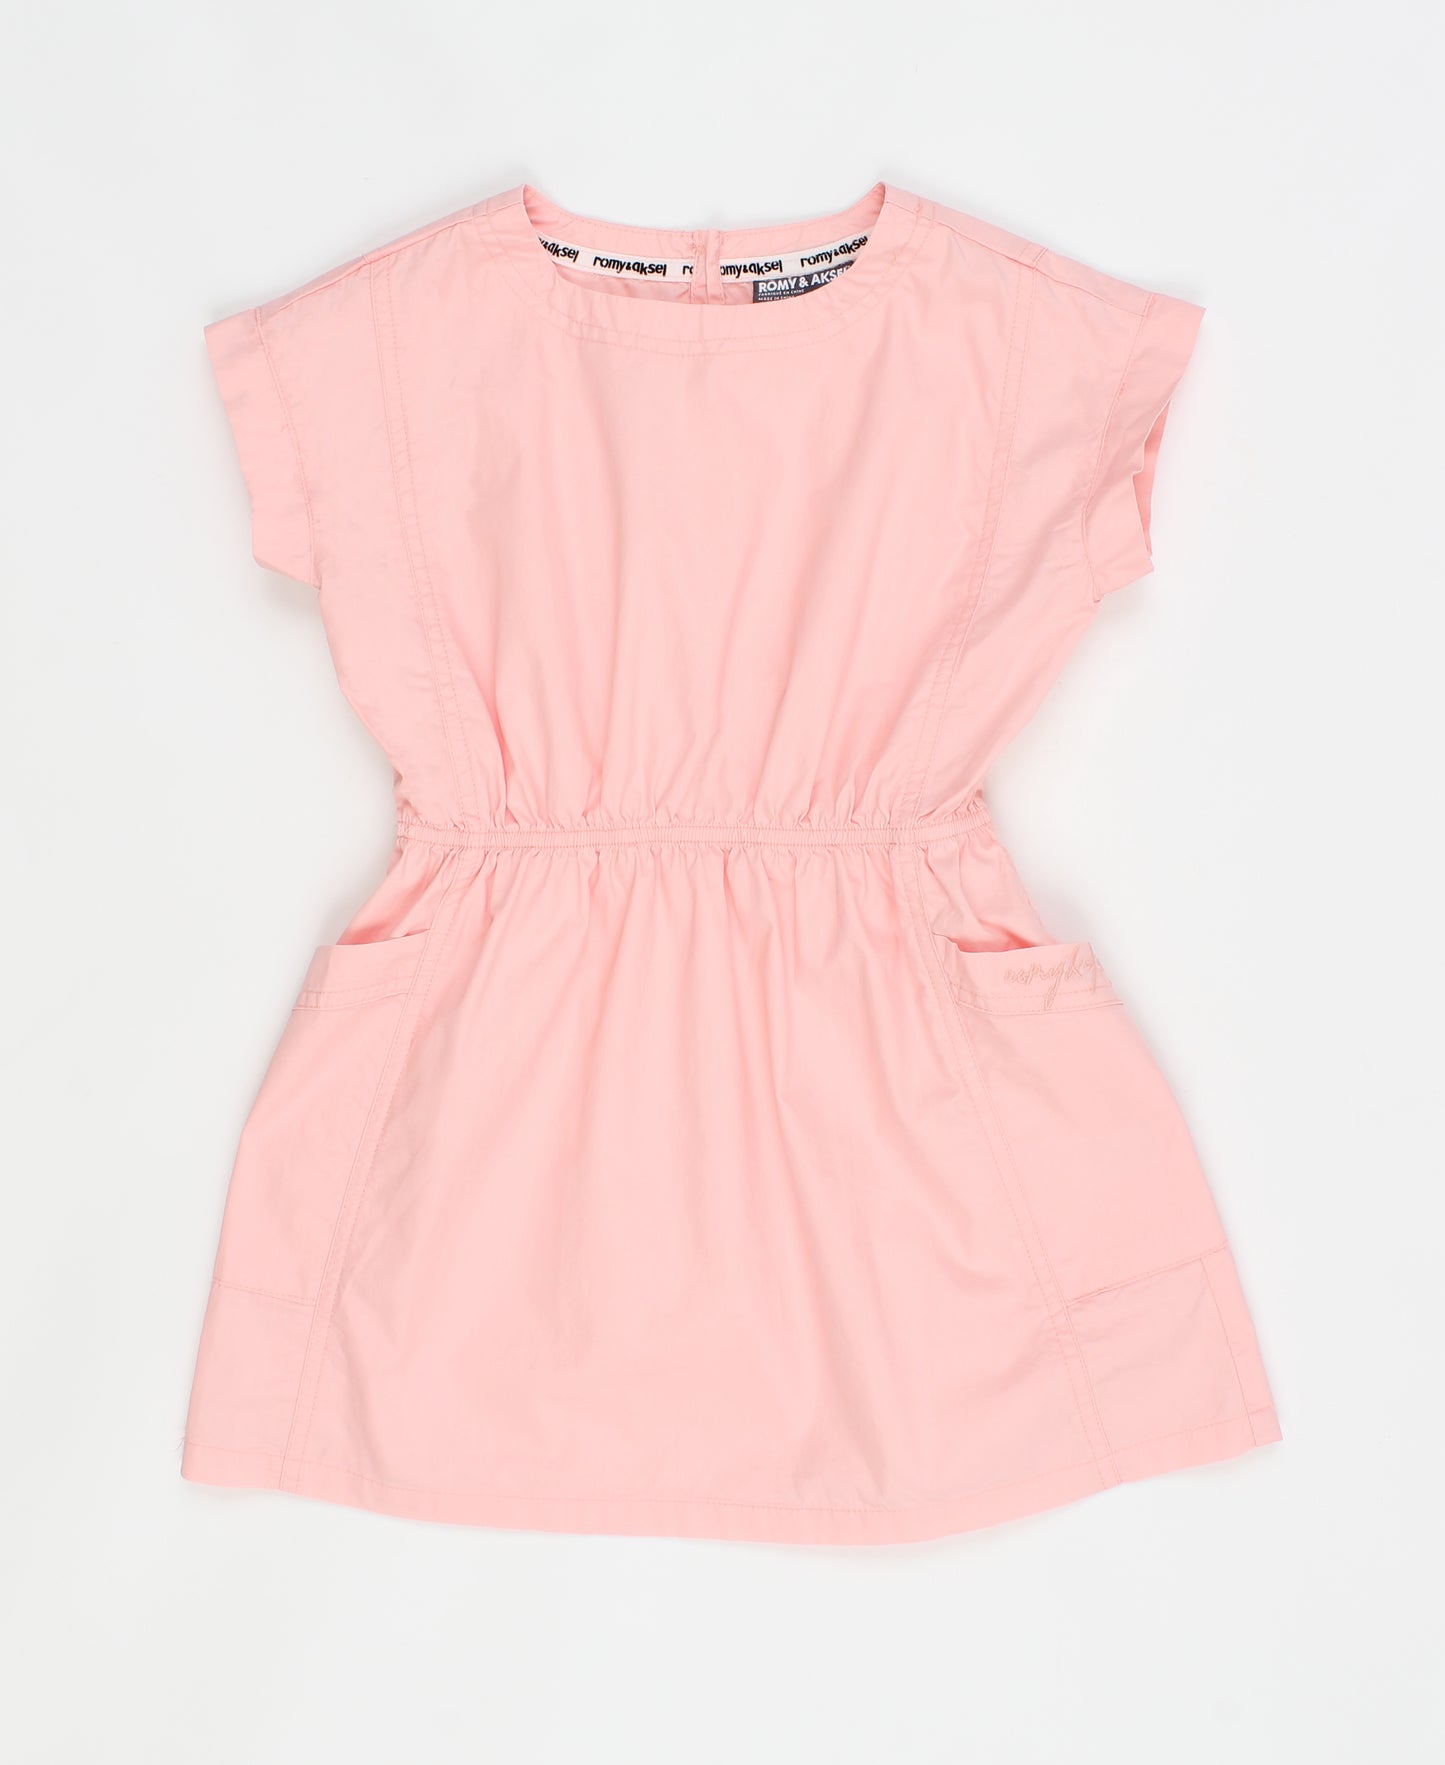 Pink denim dress 6 to 24 months - nas-ss21